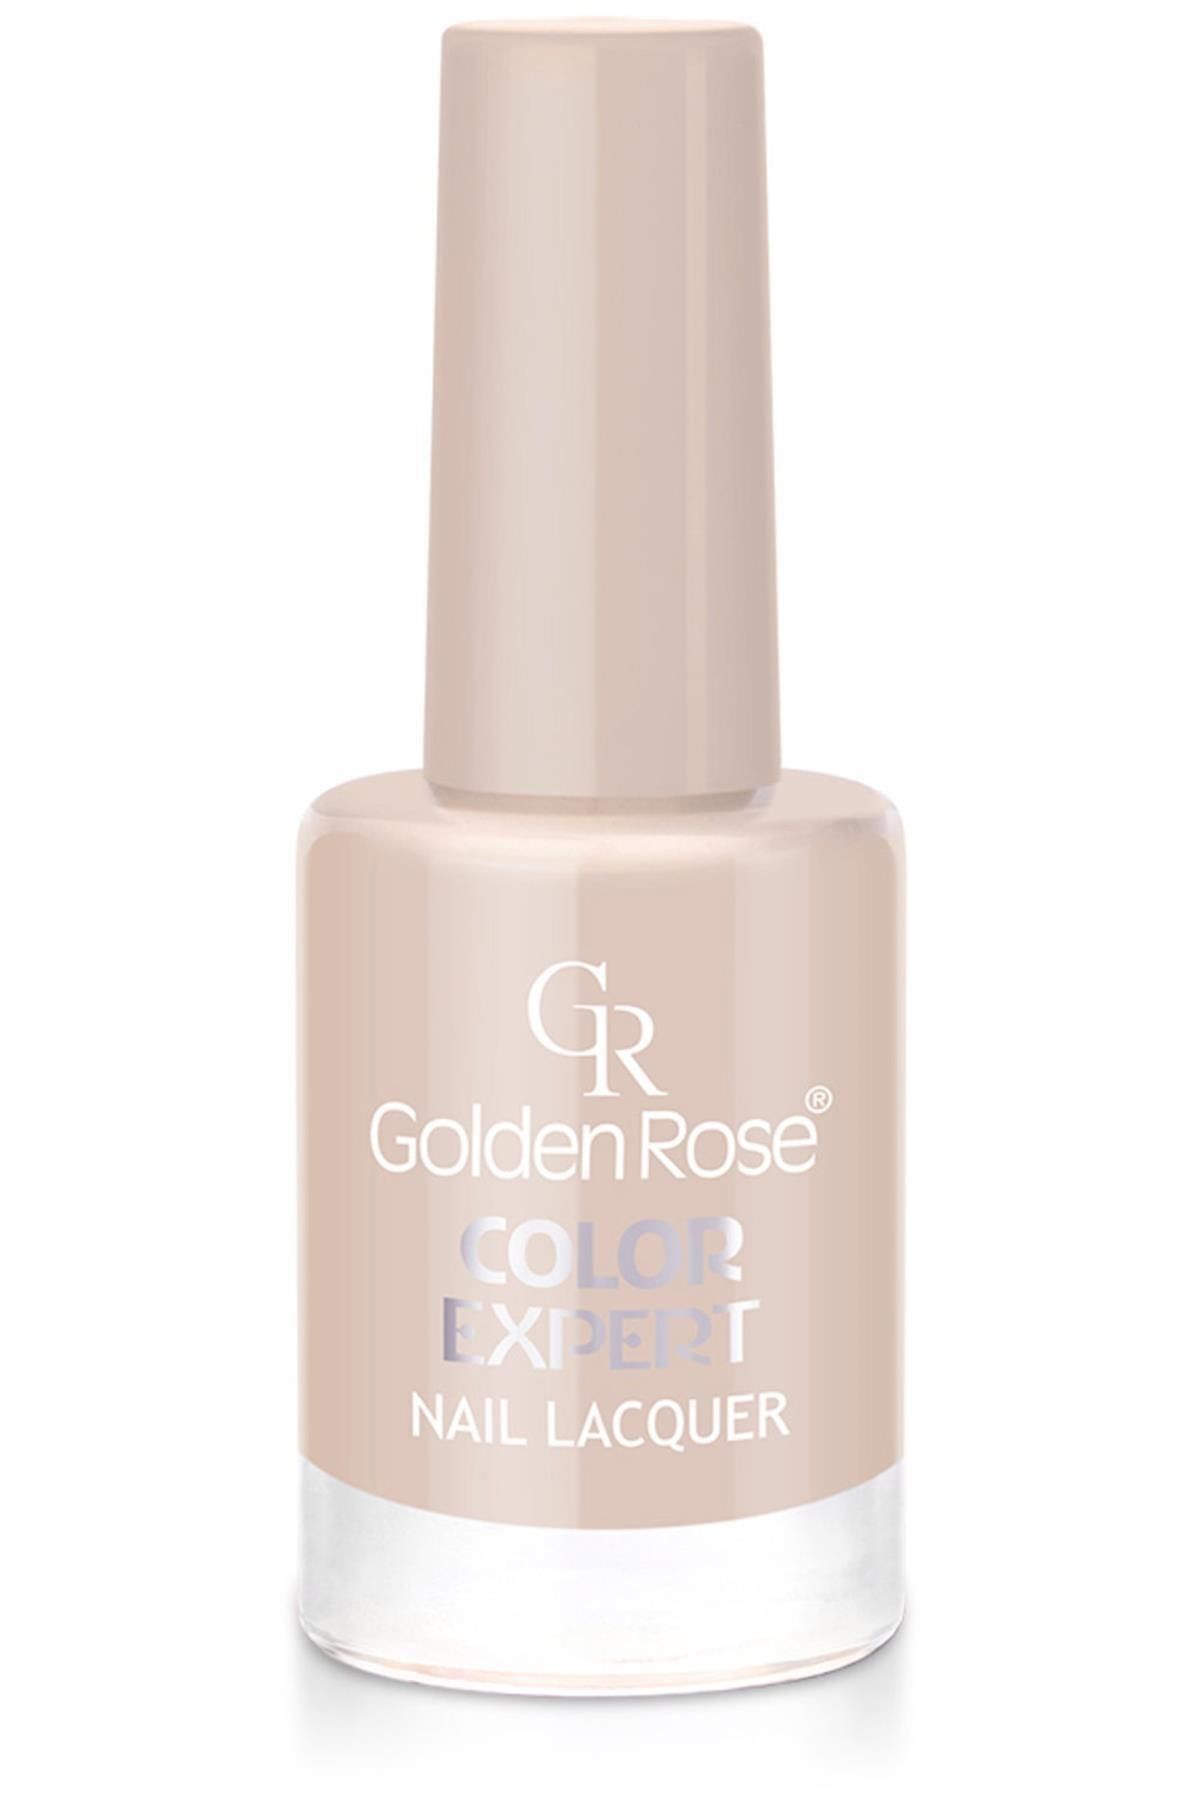 Golden Rose Marka: Color Expert Nail Lacquer No:06 Kategori: Oje